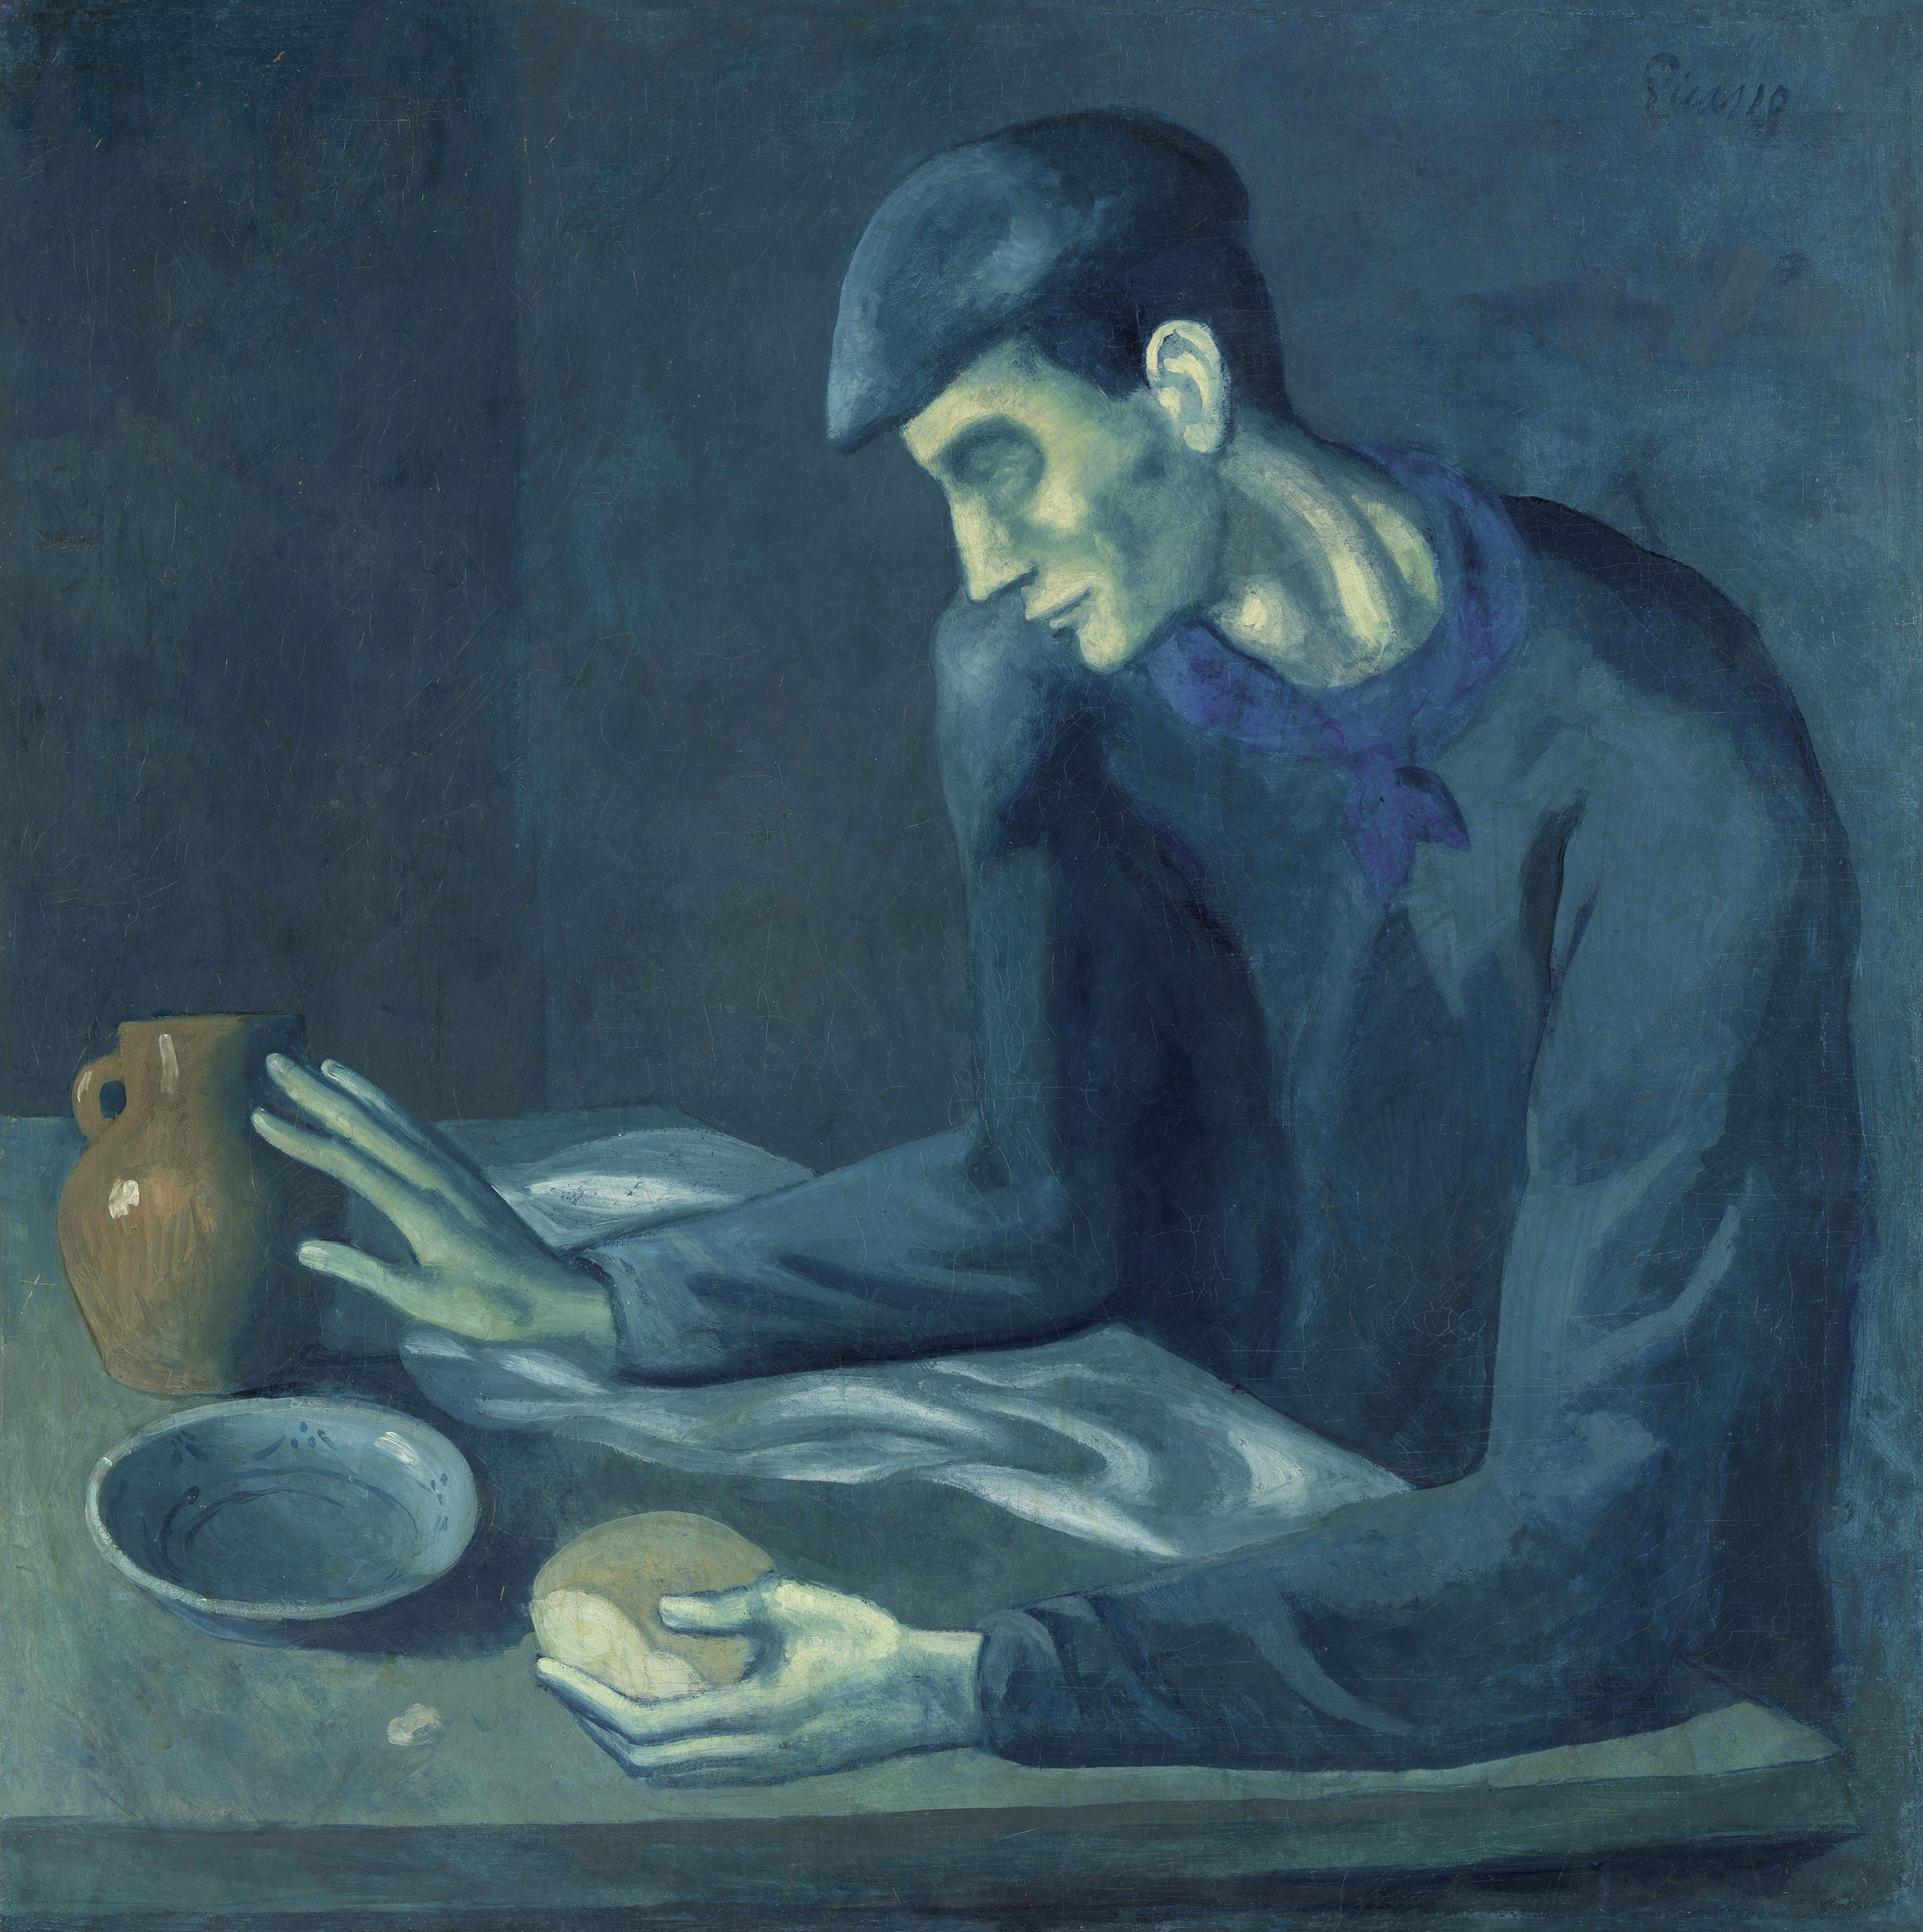 Pablo Picasso, "Le repas de l'aveugle", 1903. [© Succession Picasso / 2018, ProLitteris, Zurich / 2017, The Metropolitan Museum of Art / Art Resource / Scala, Florence]